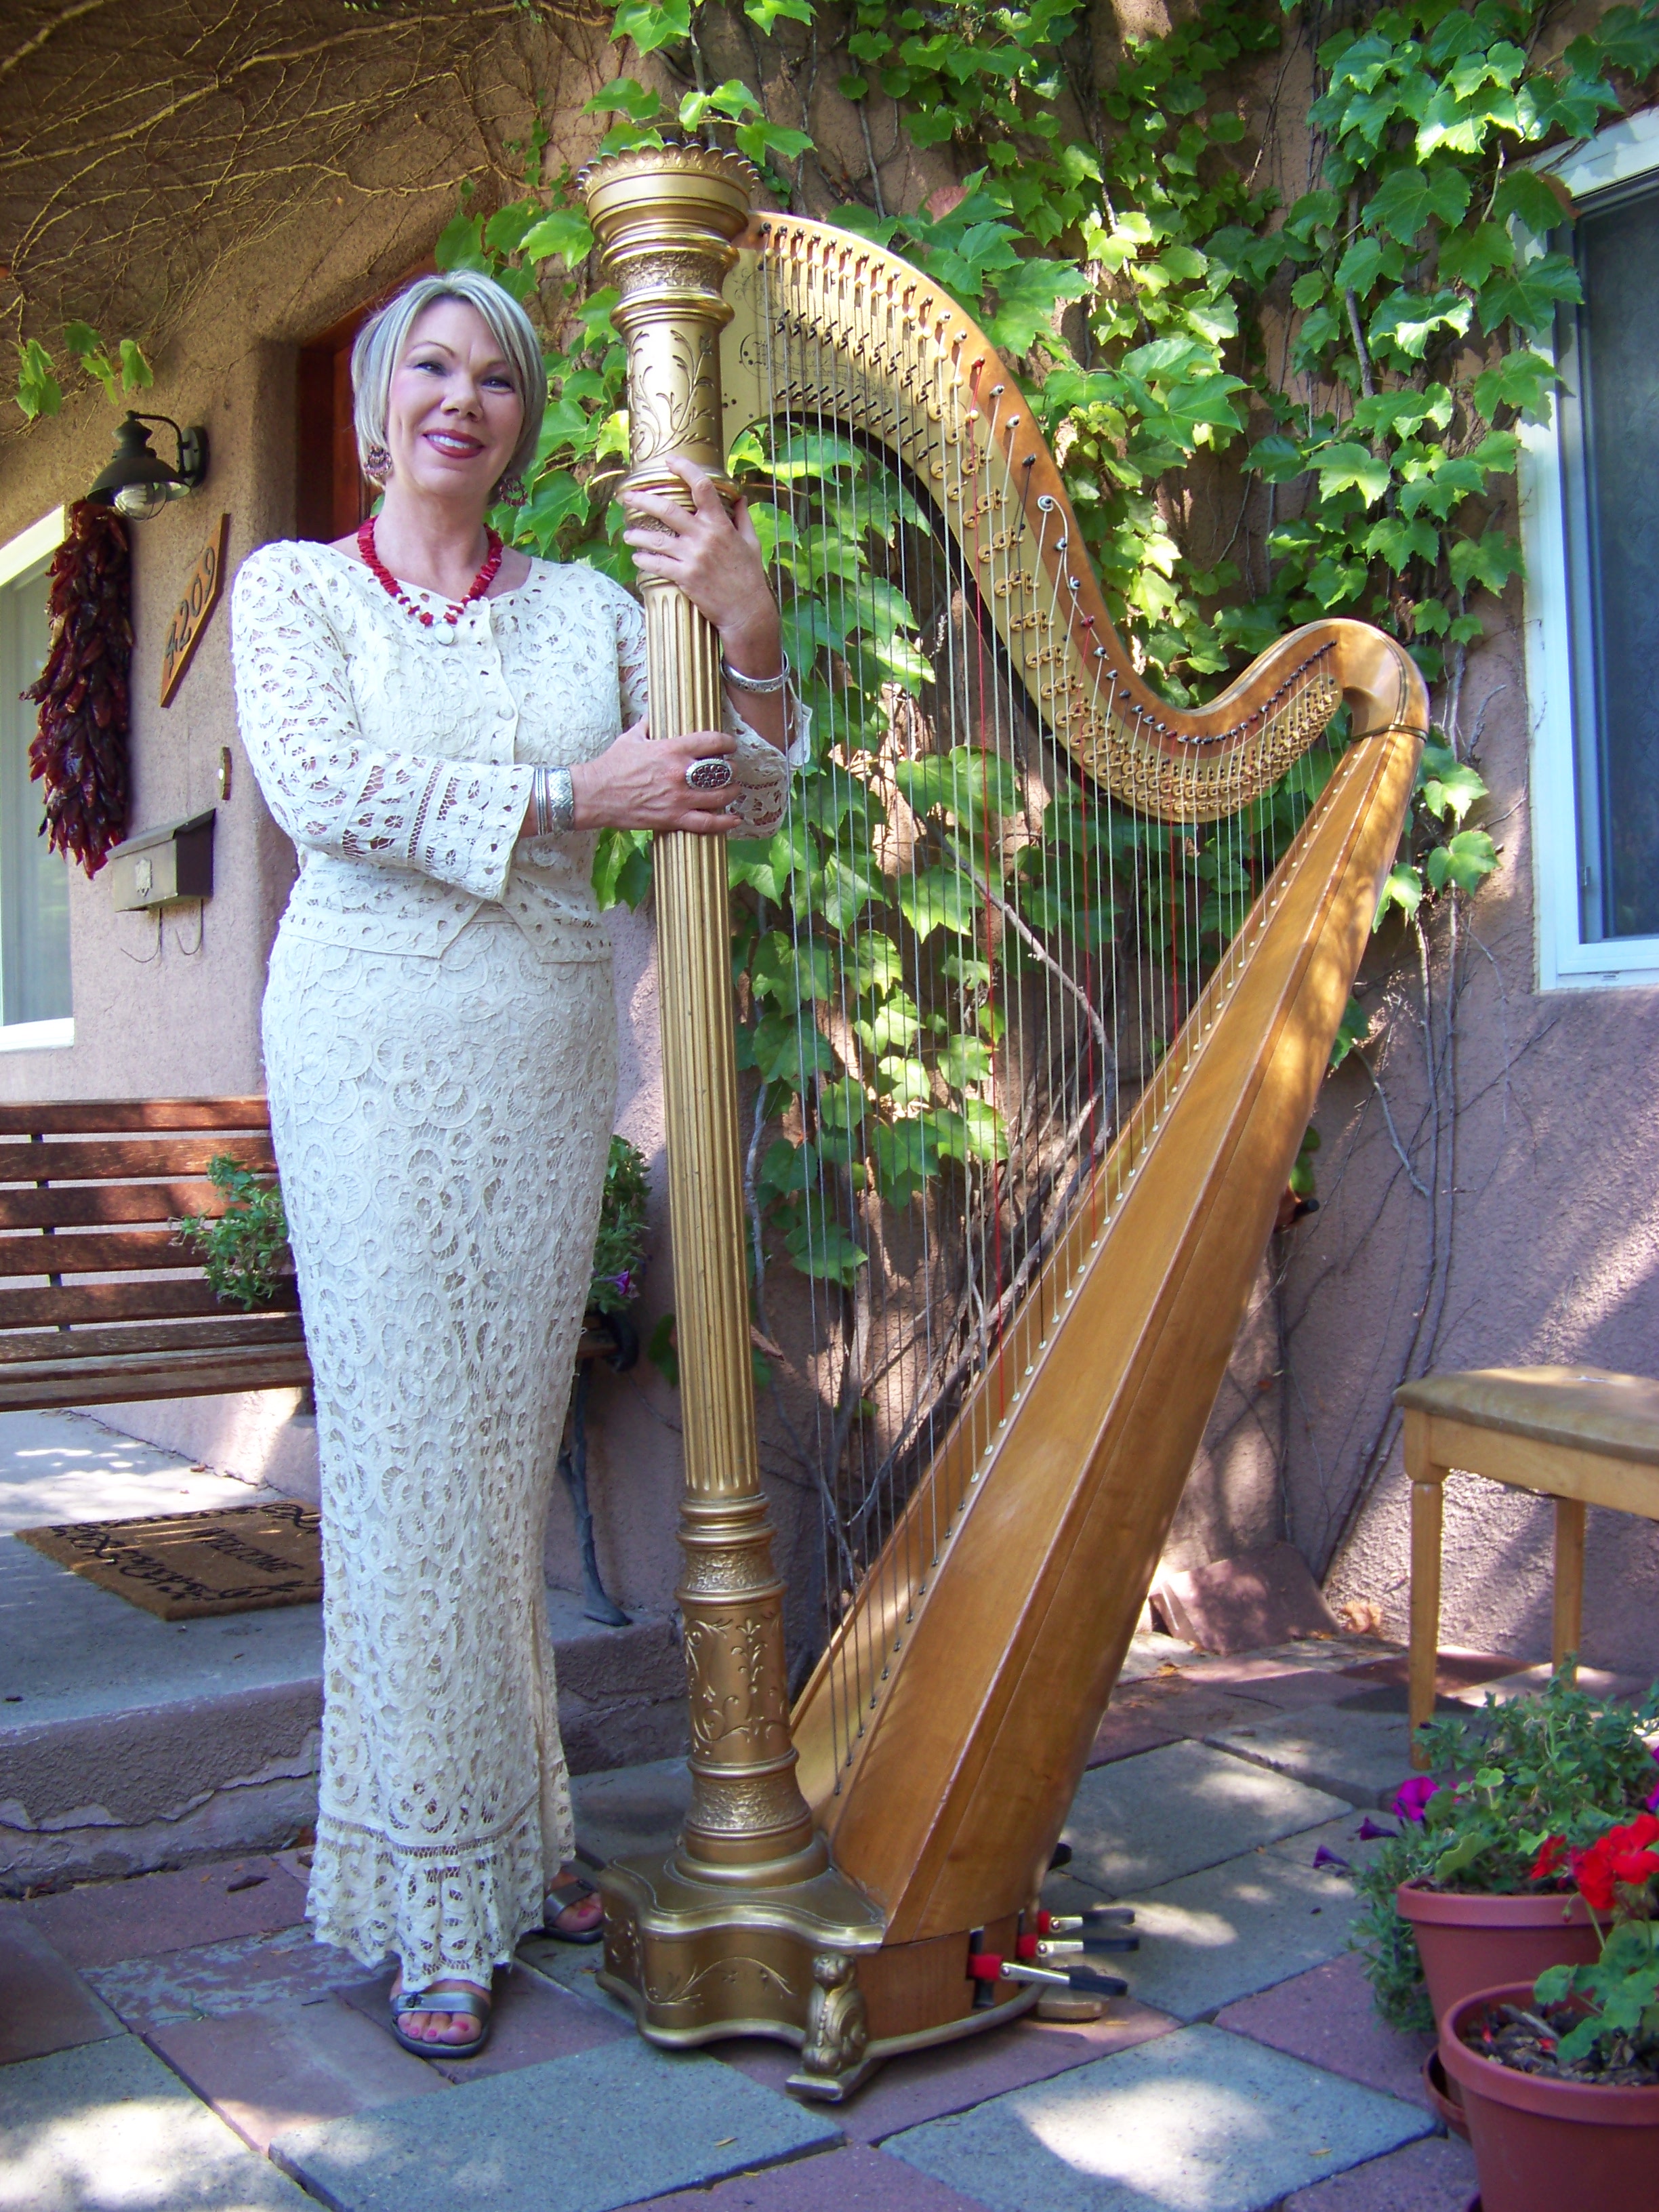 Harpist Julianne Rivera sitting by her harp